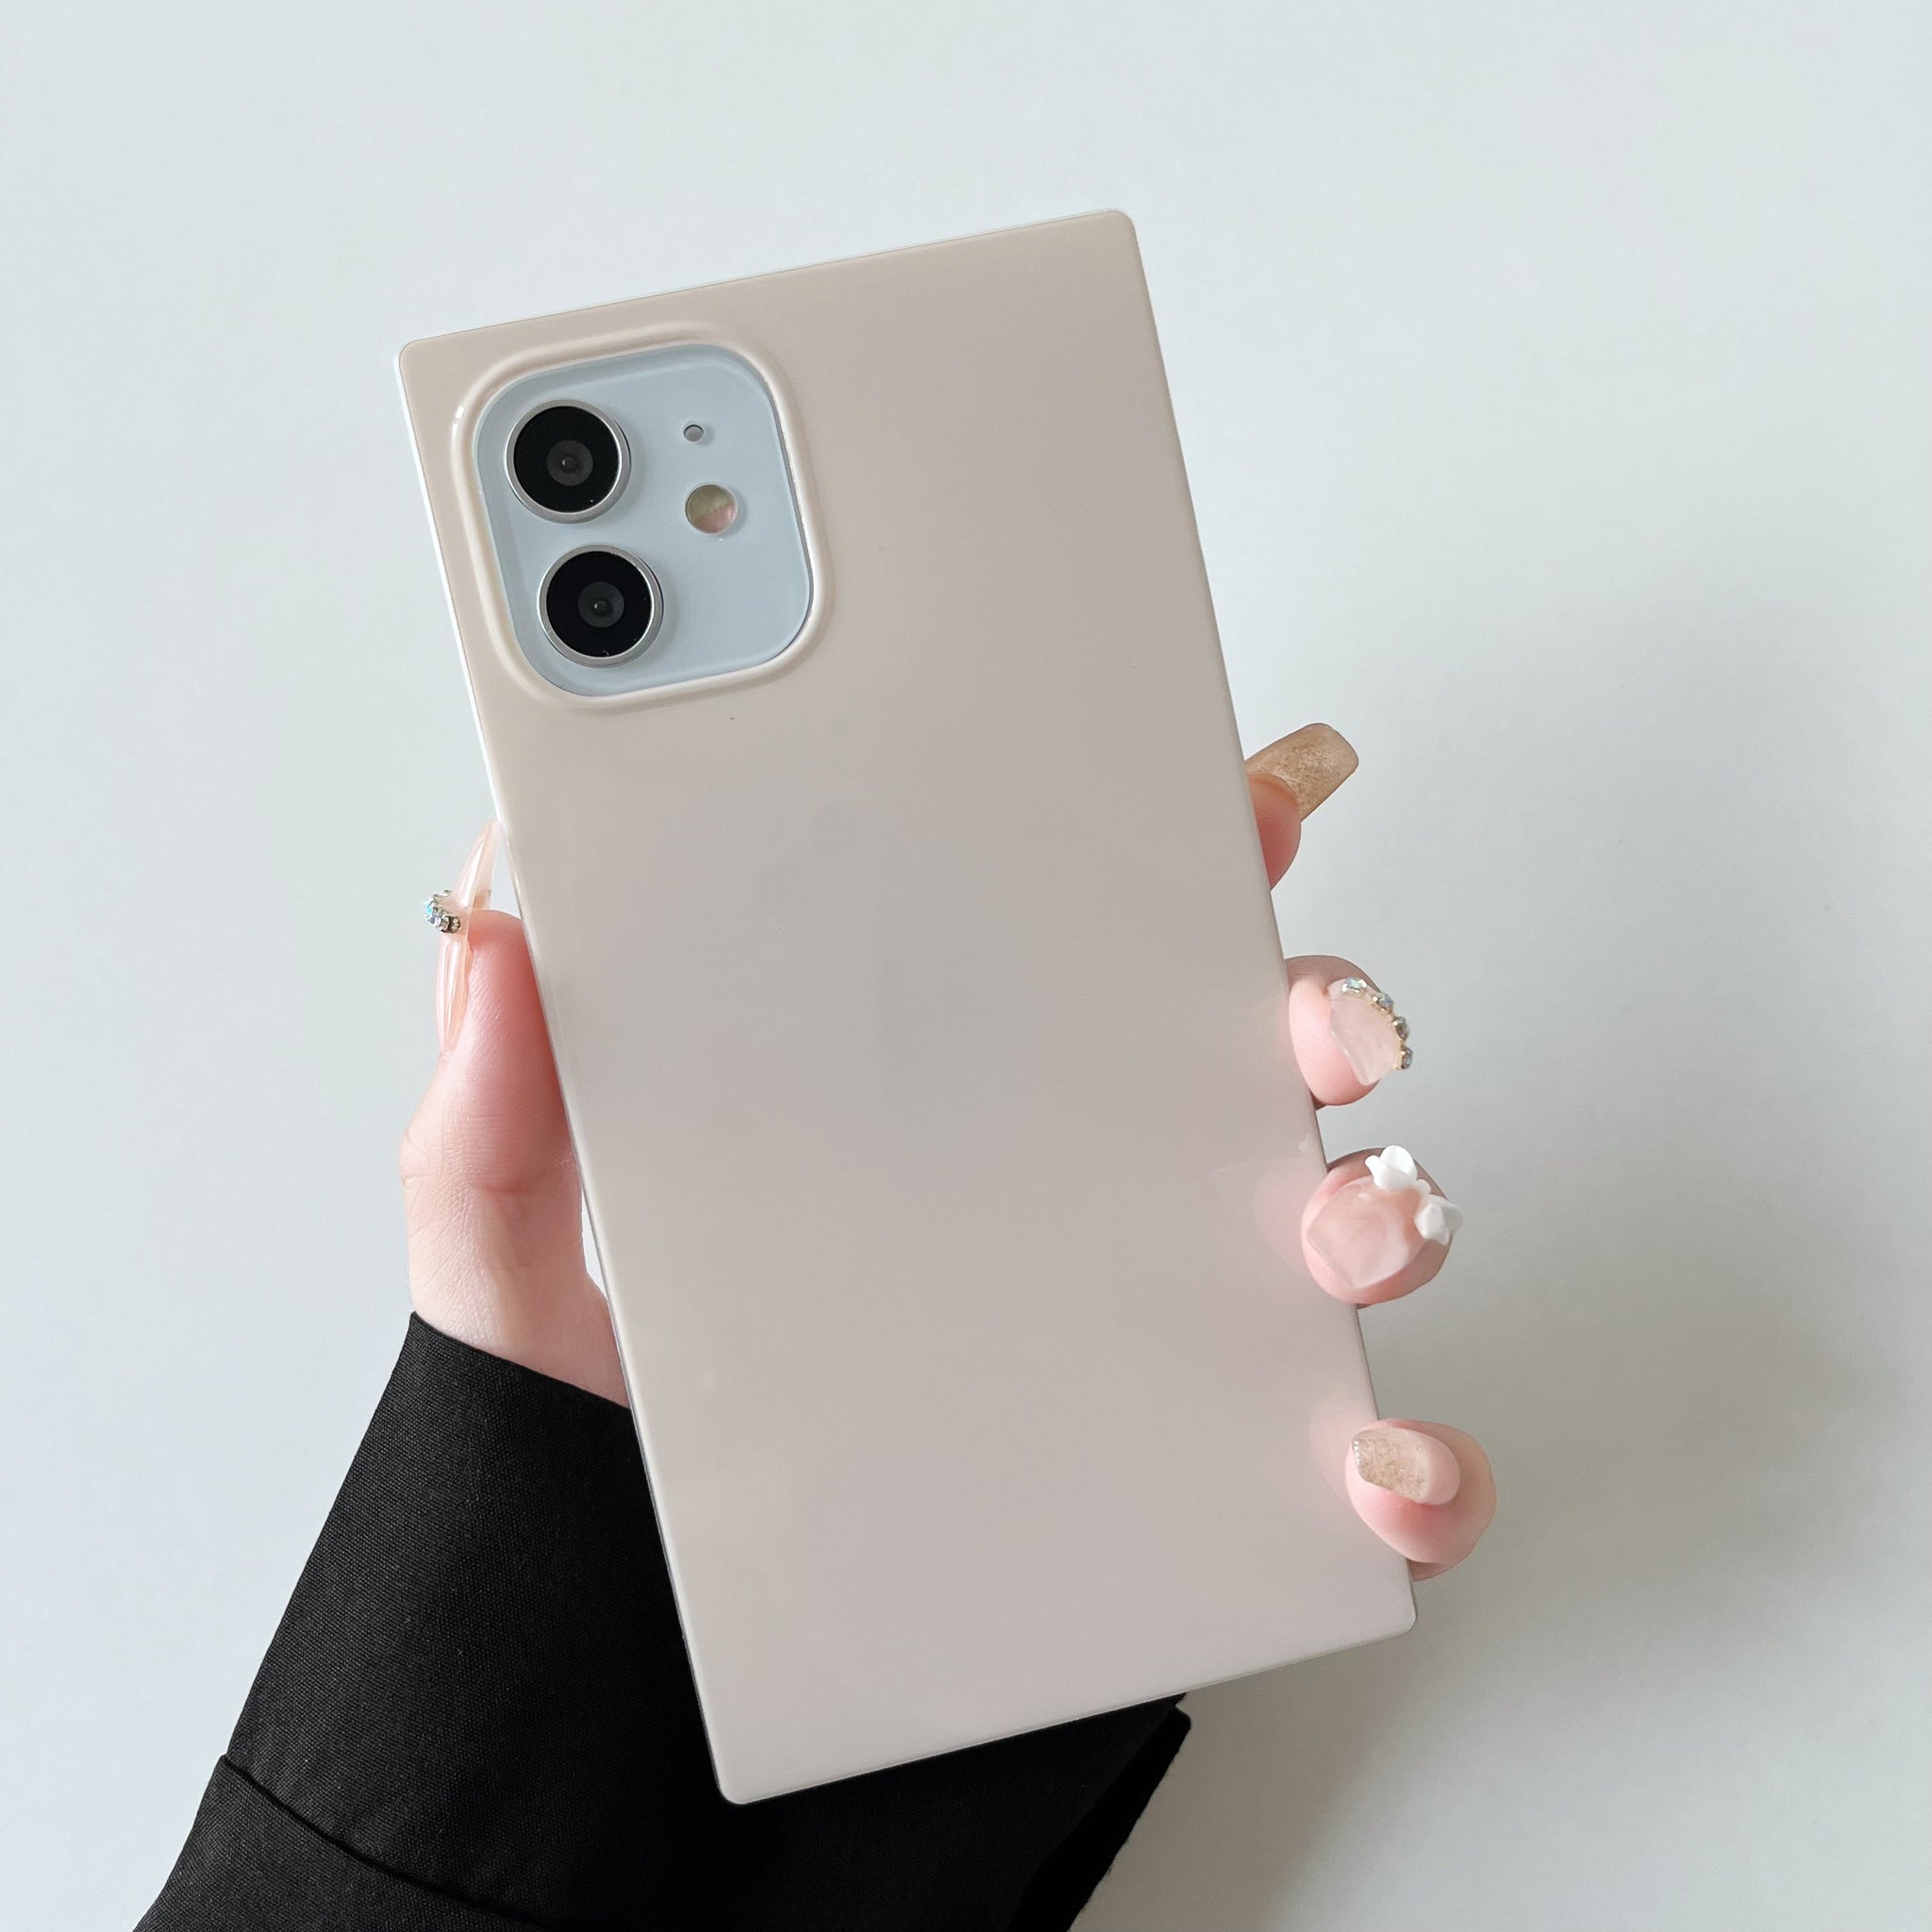 iPhone 11 Pro Max Case Square Neutral Plain Color (Antique White)